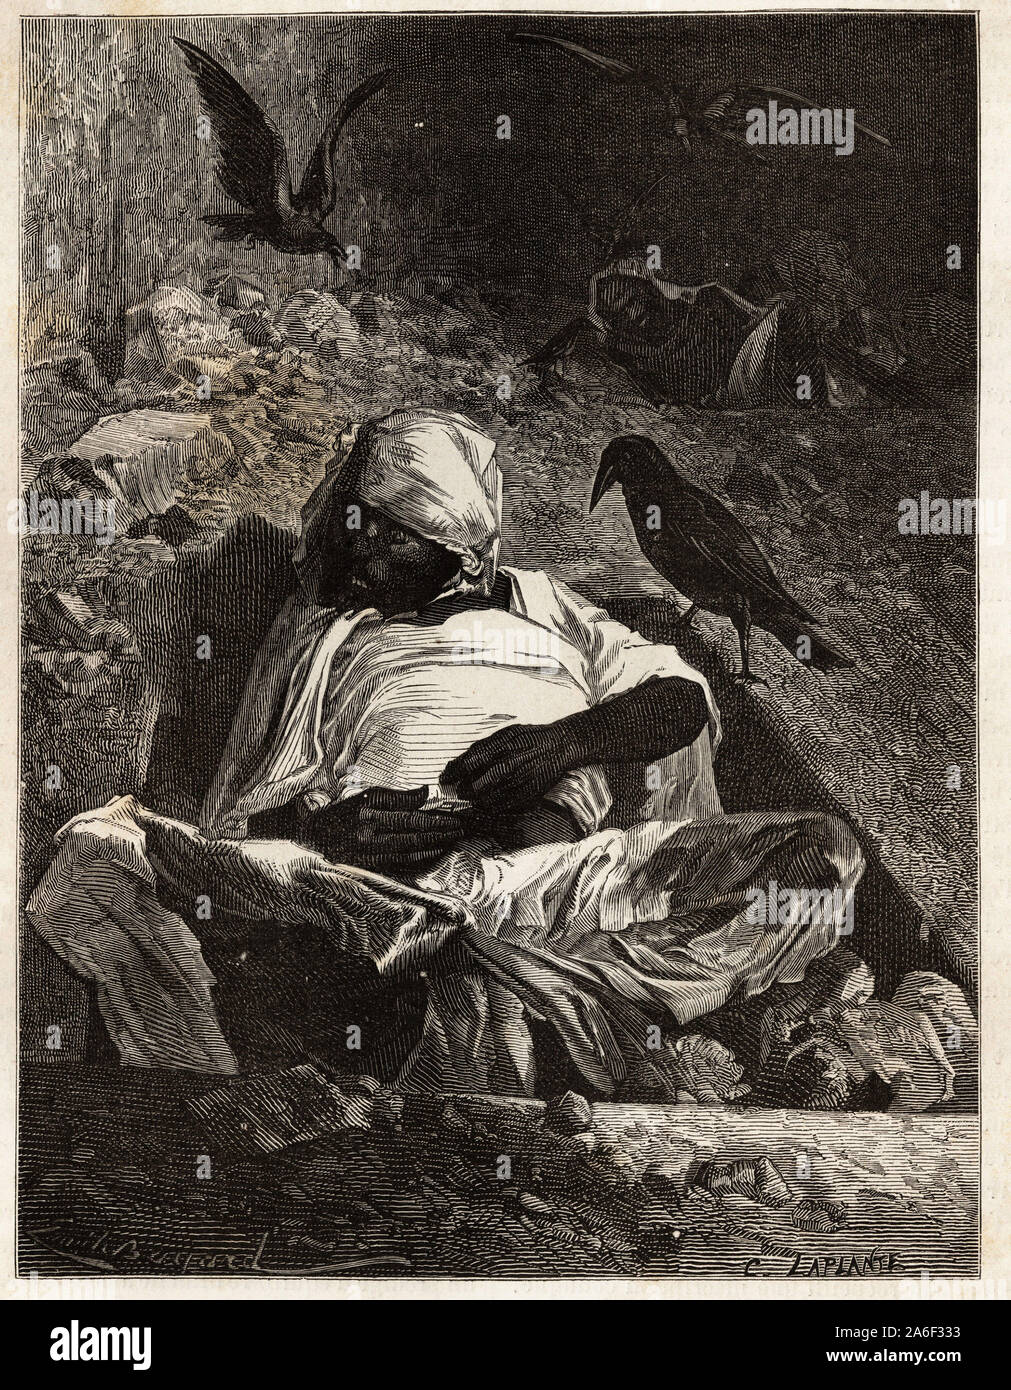 Une caso du cimetiere guebre ( ou zoroastrien) pres de Teherán (Irán), le cadavre reste exponer en plein aire jusqu'a ce qu'il soit depouille de toute s Foto de stock